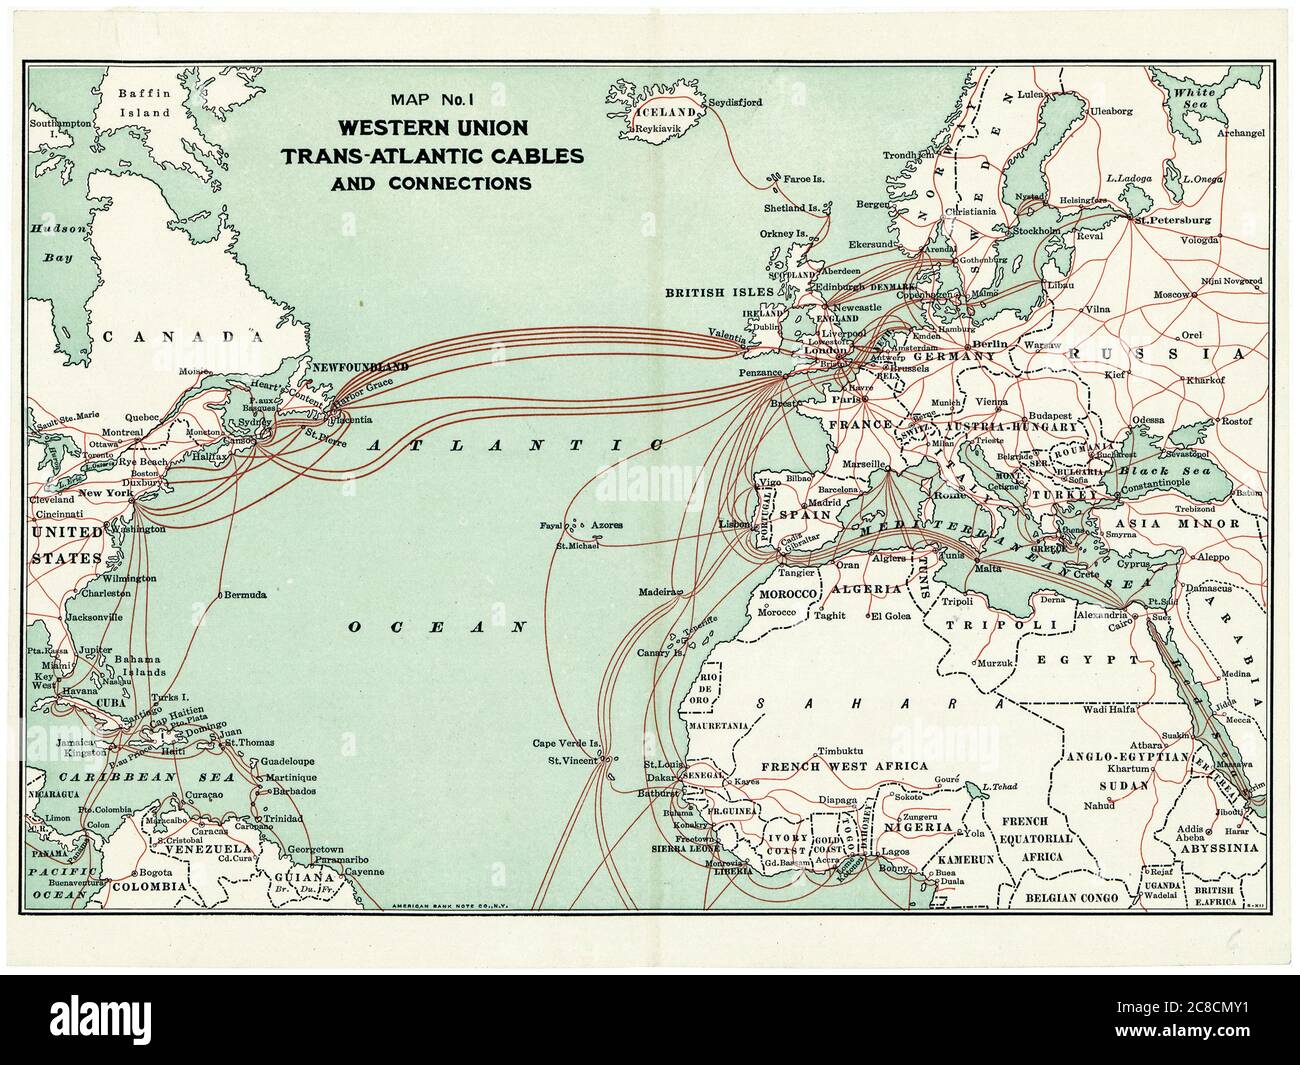 Mapa de cables transatlánticos de Western Union que muestra las rutas de cables telegráficos submarinos, por Western Union Telegraph Company, 1900 Foto de stock